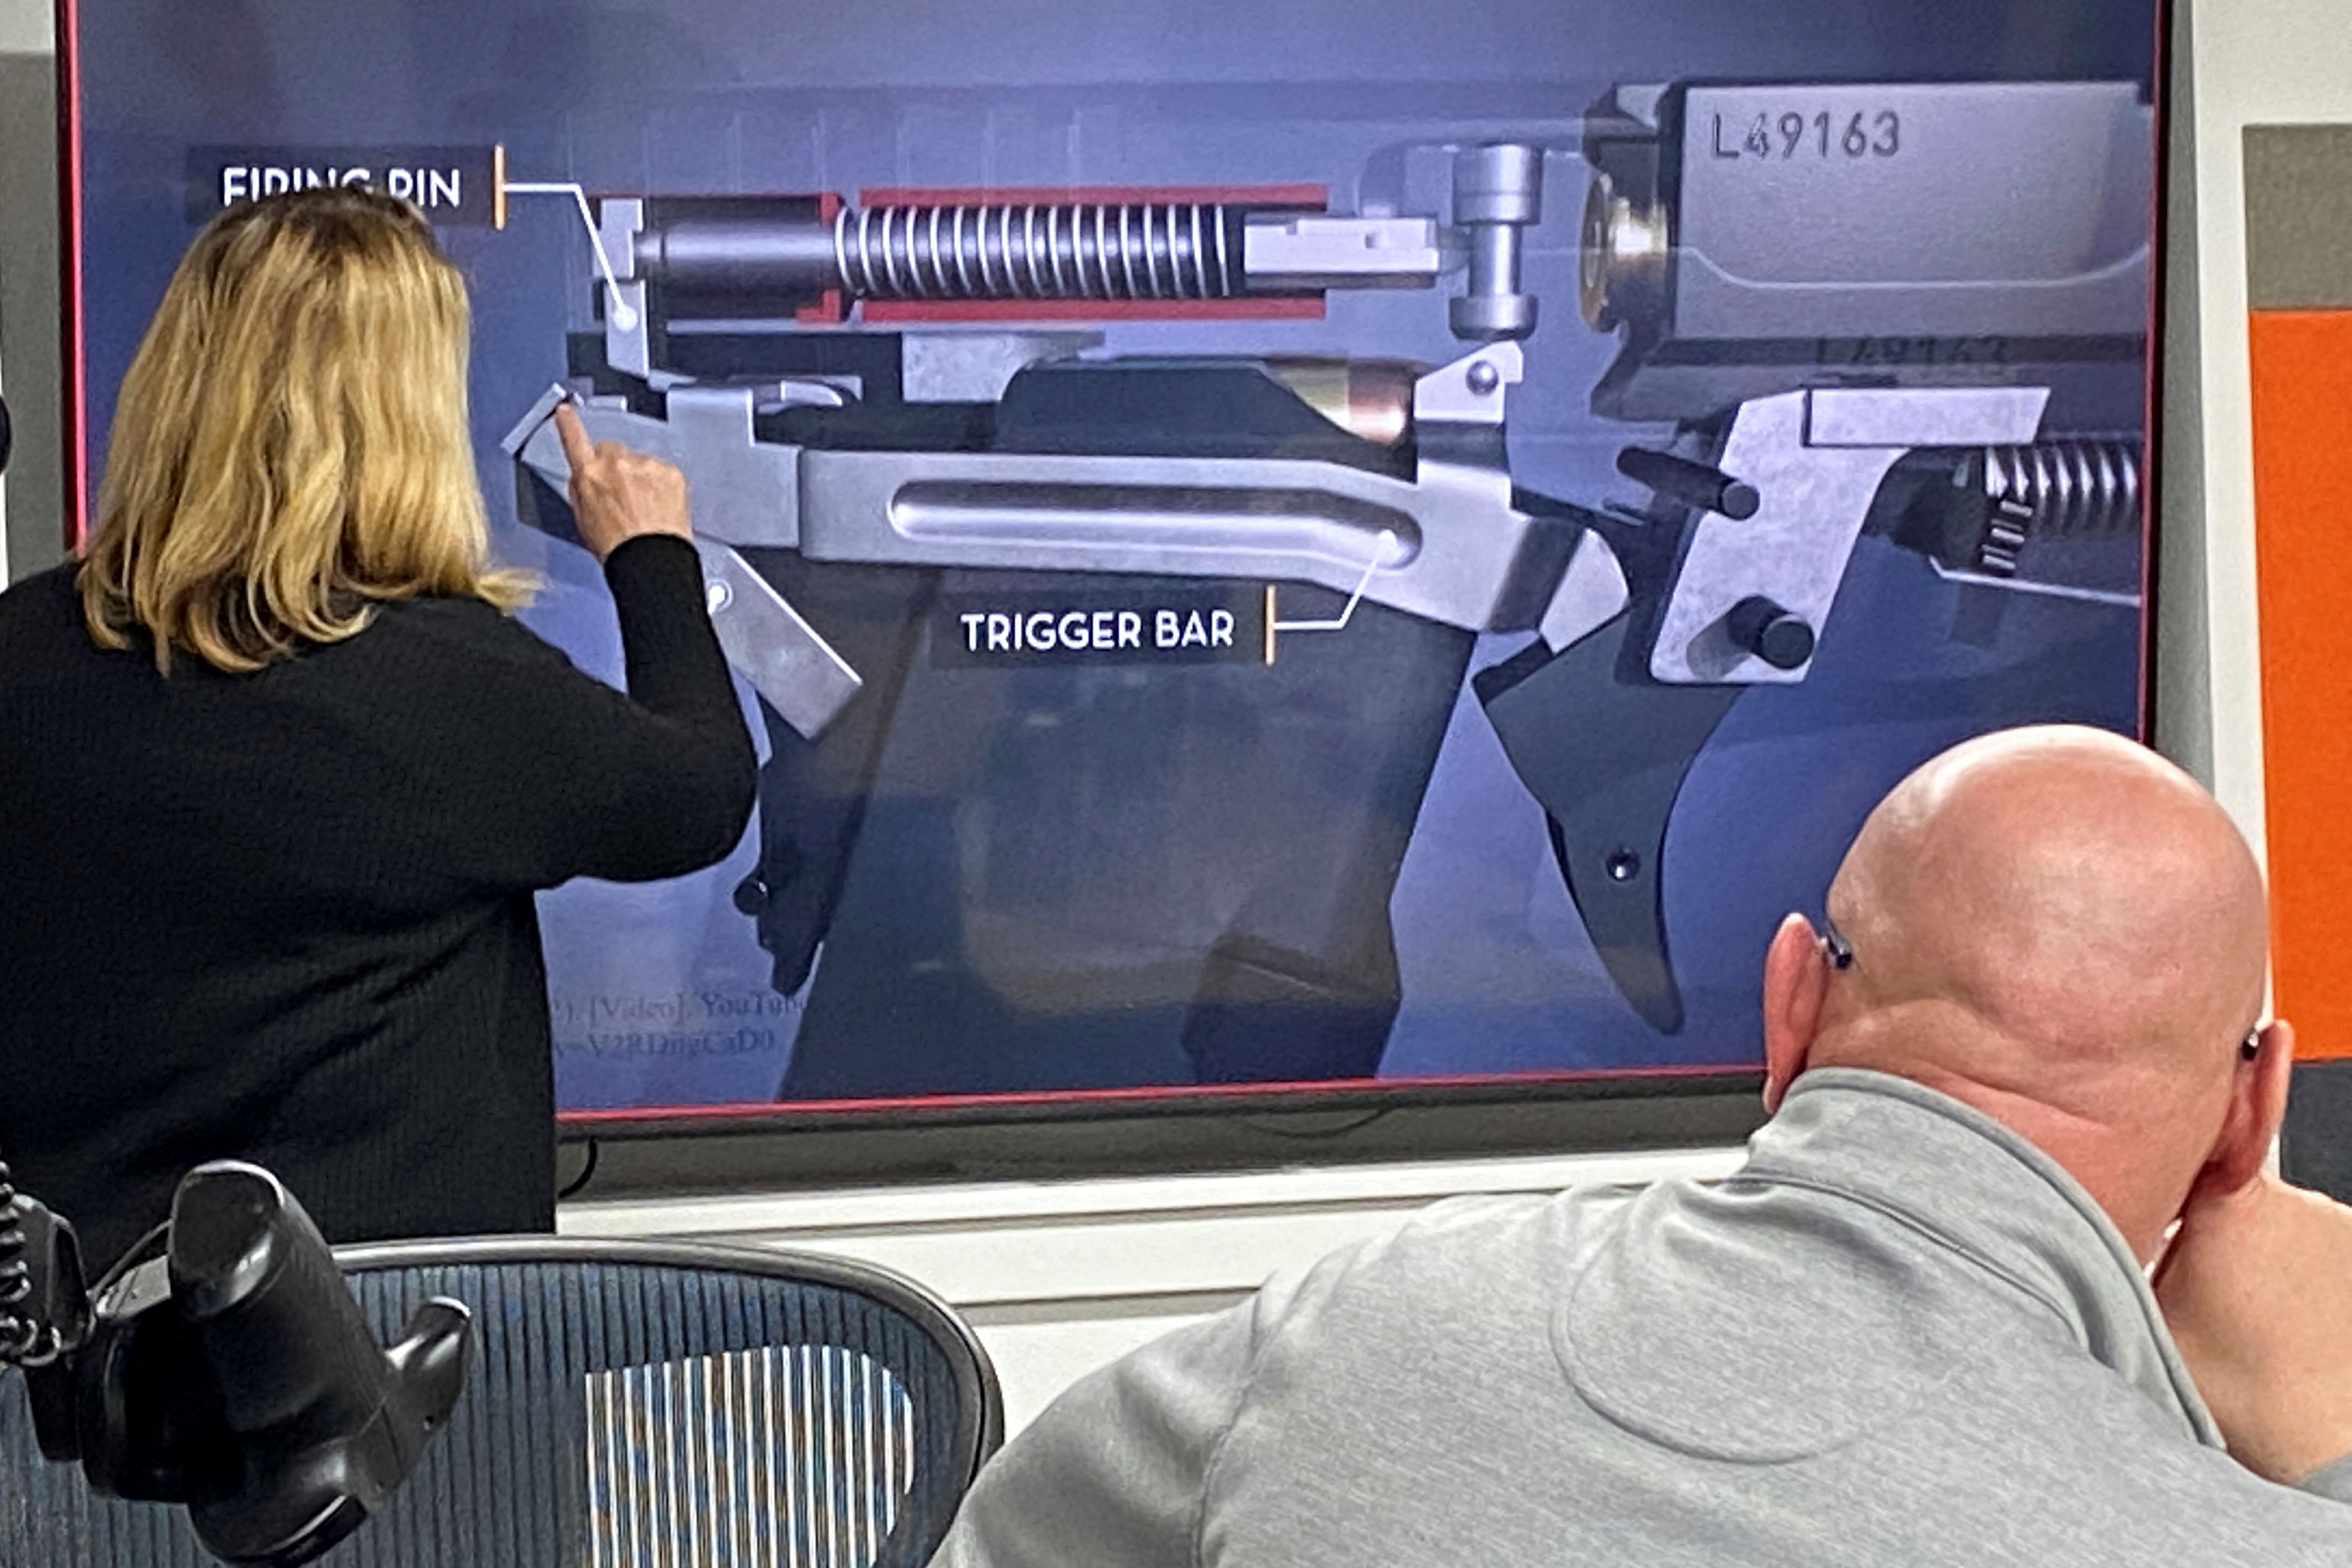 LodeStar unveils its 9mm smart gun in Boise